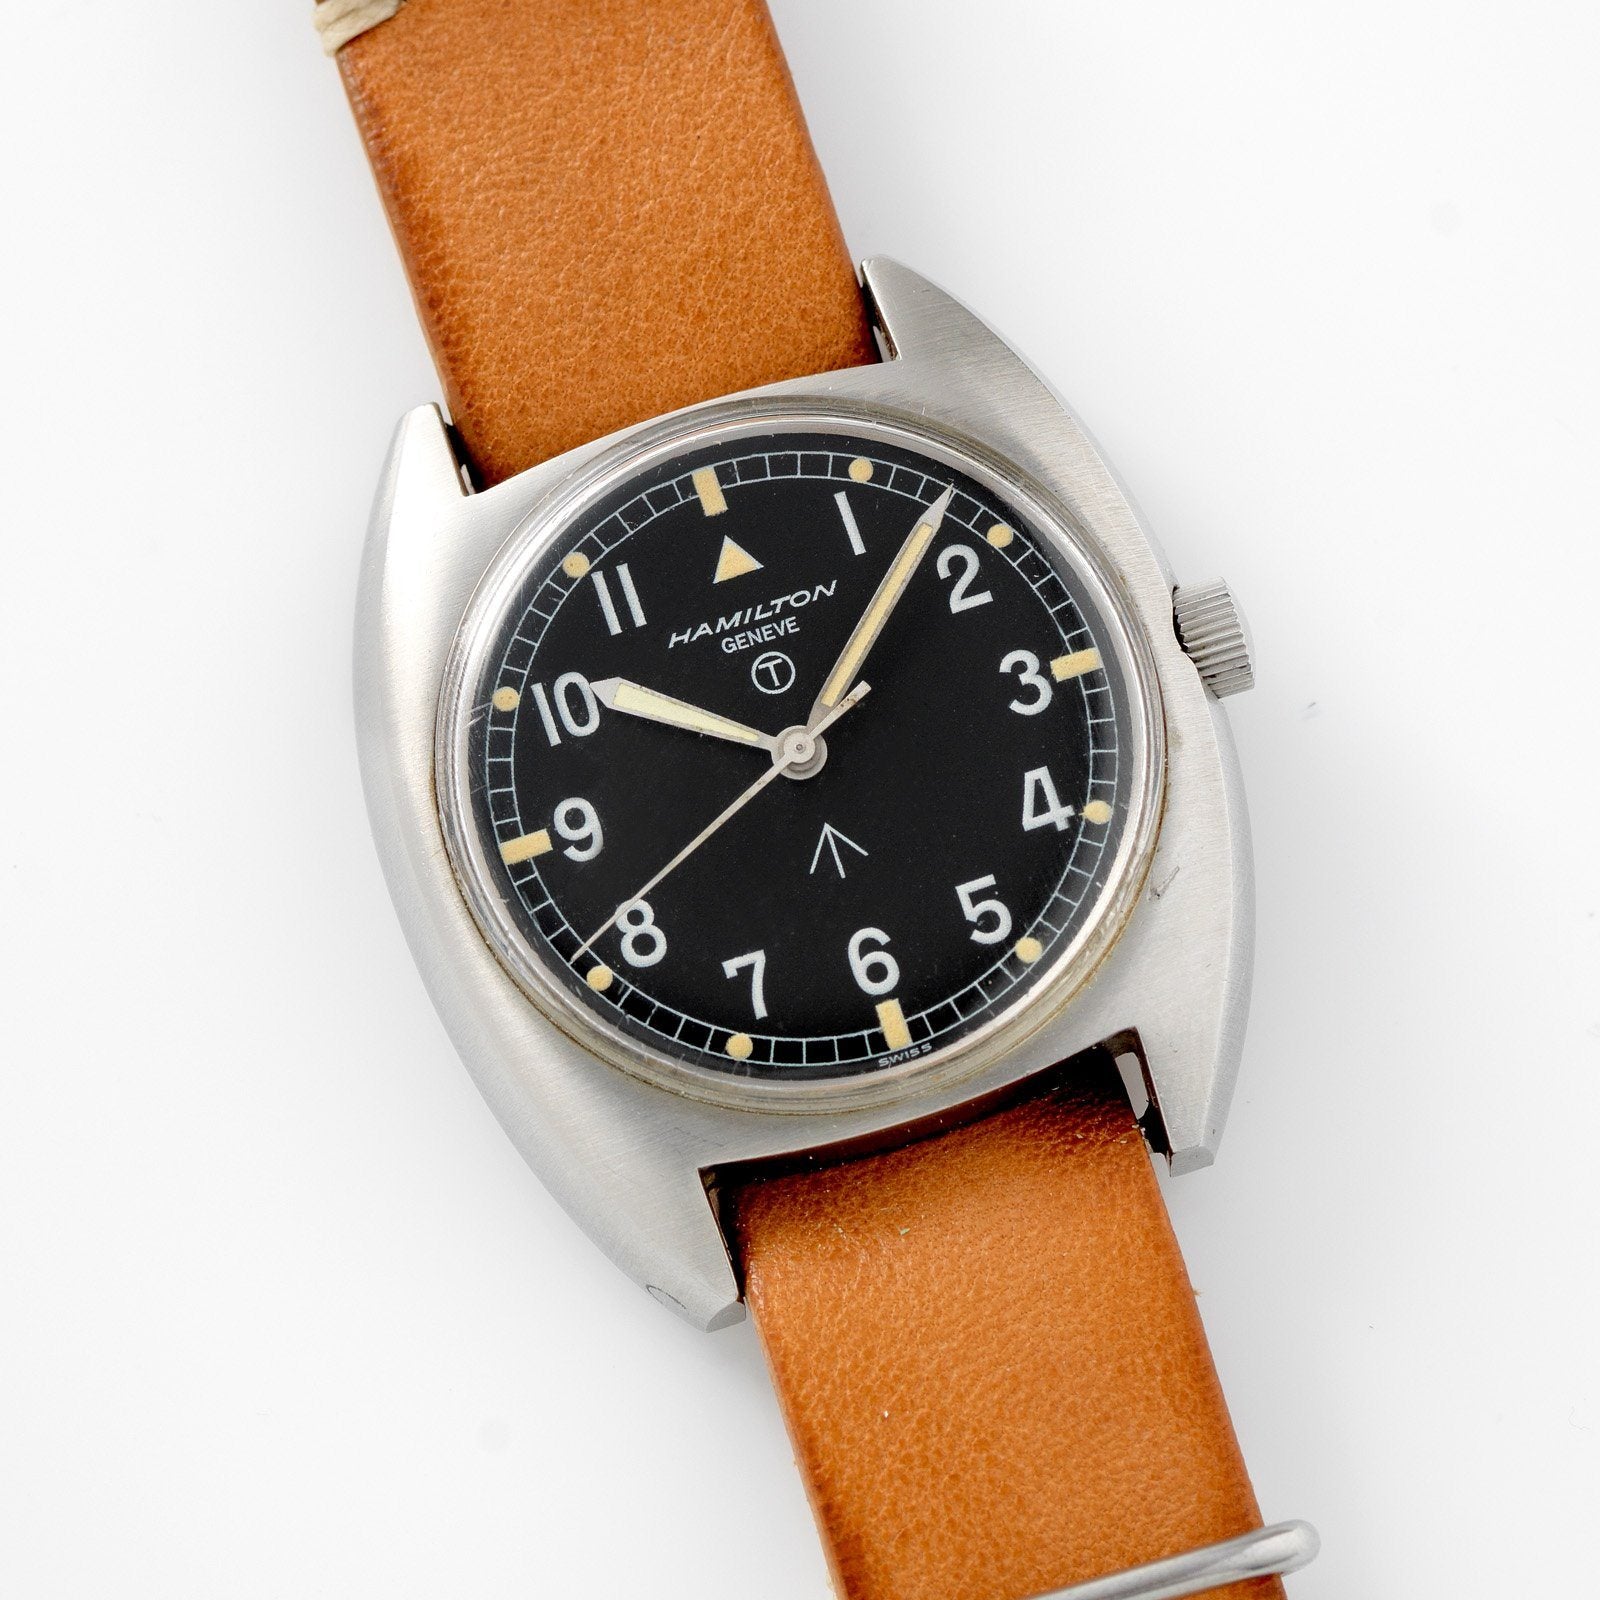 Hamilton W10 British Army Issued Watch